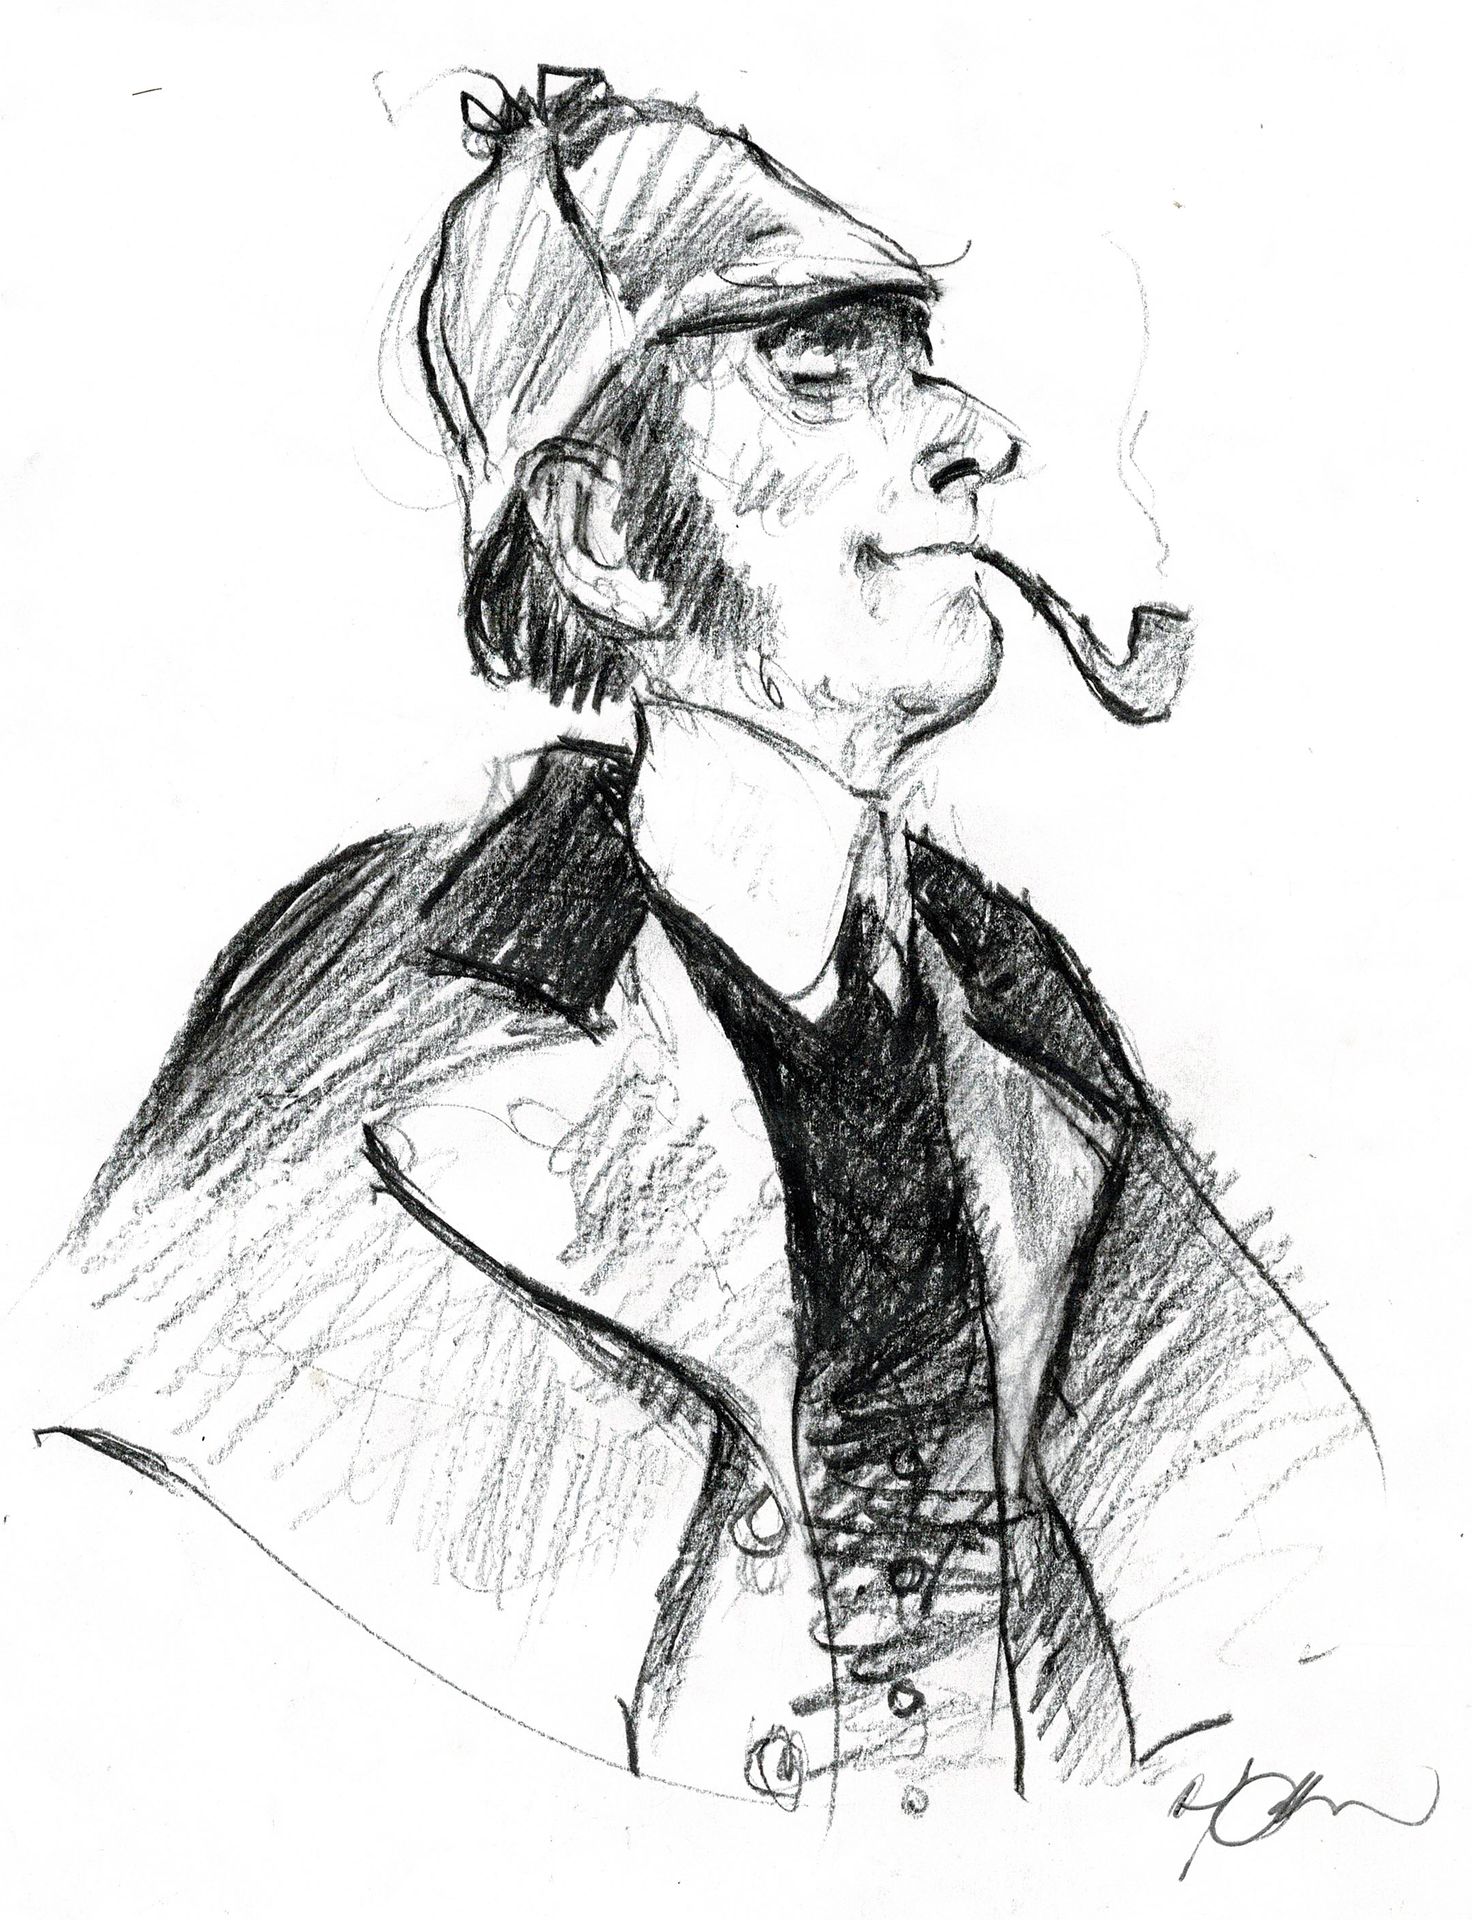 René FOLLET 
Sherlock Holmes, Original-Kohlezeichnung. Größe: 26 cm x 19 cm.